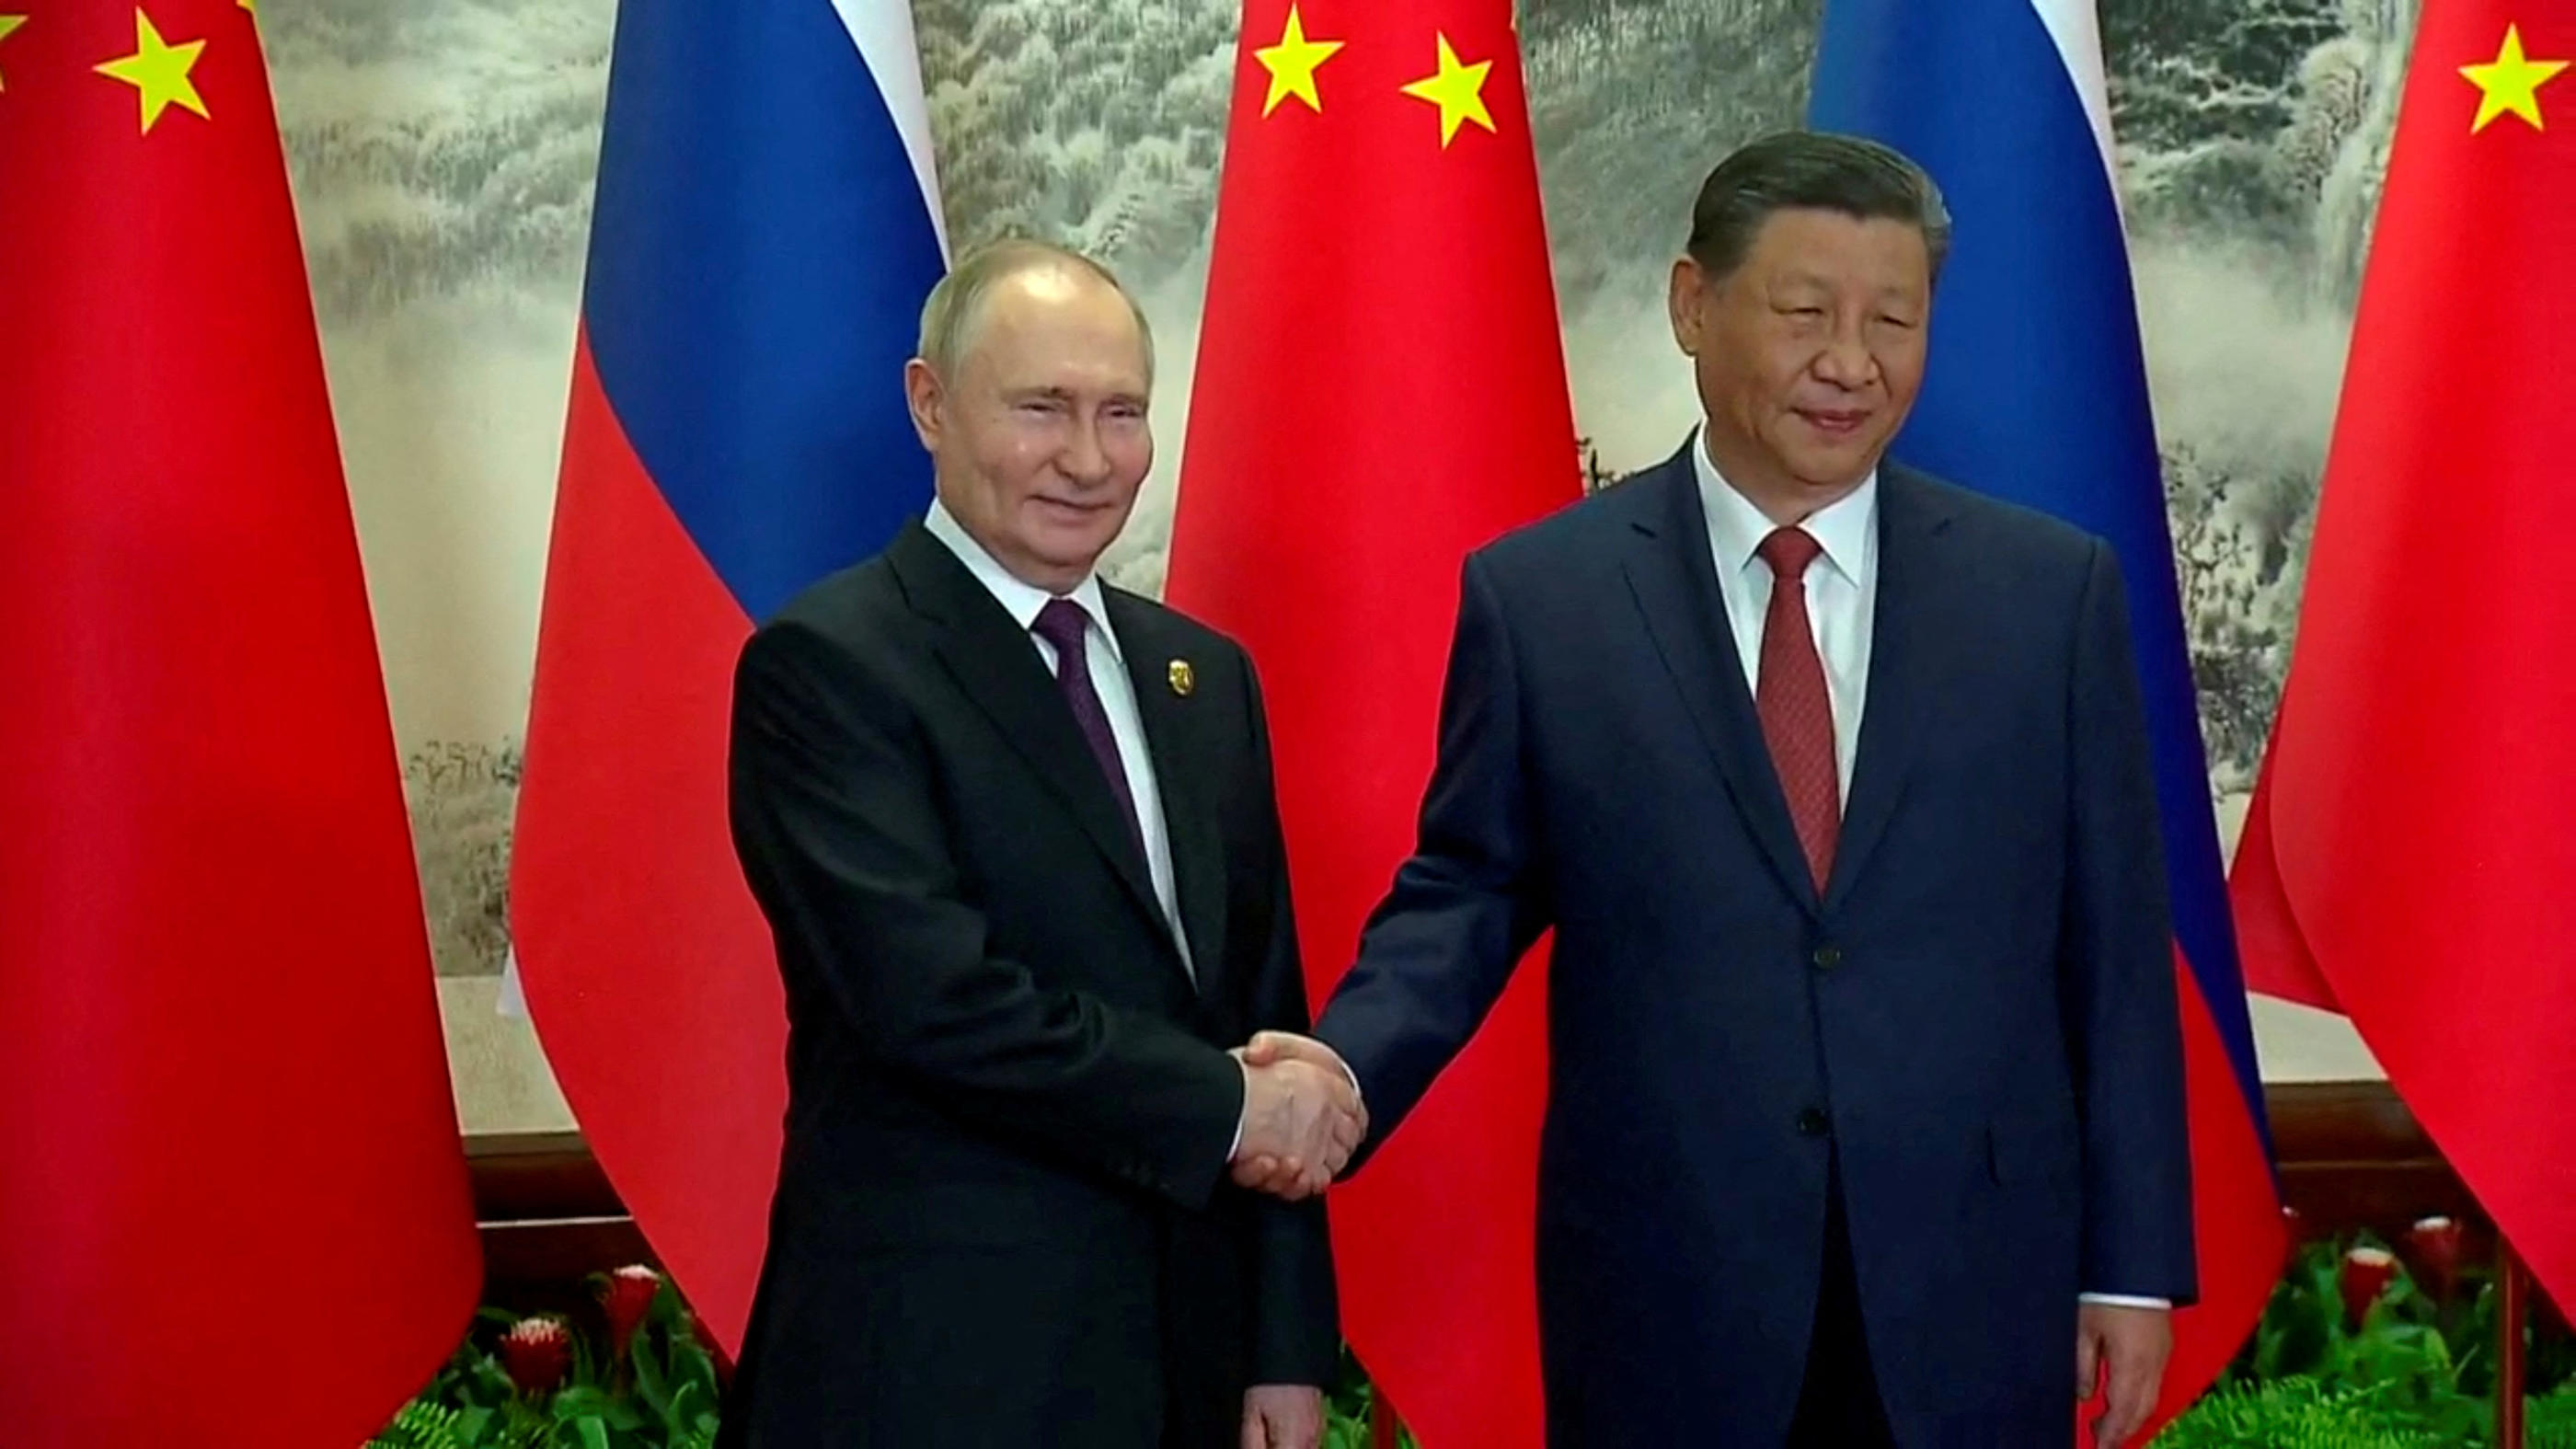 En choisissant d’effectuer en Chine son premier voyage à l’étranger depuis son investiture pour un nouveau mandat de six ans, Vladimir Poutine envoie un message sur sa volonté de renforcer son partenariat avec Pékin. Reuters